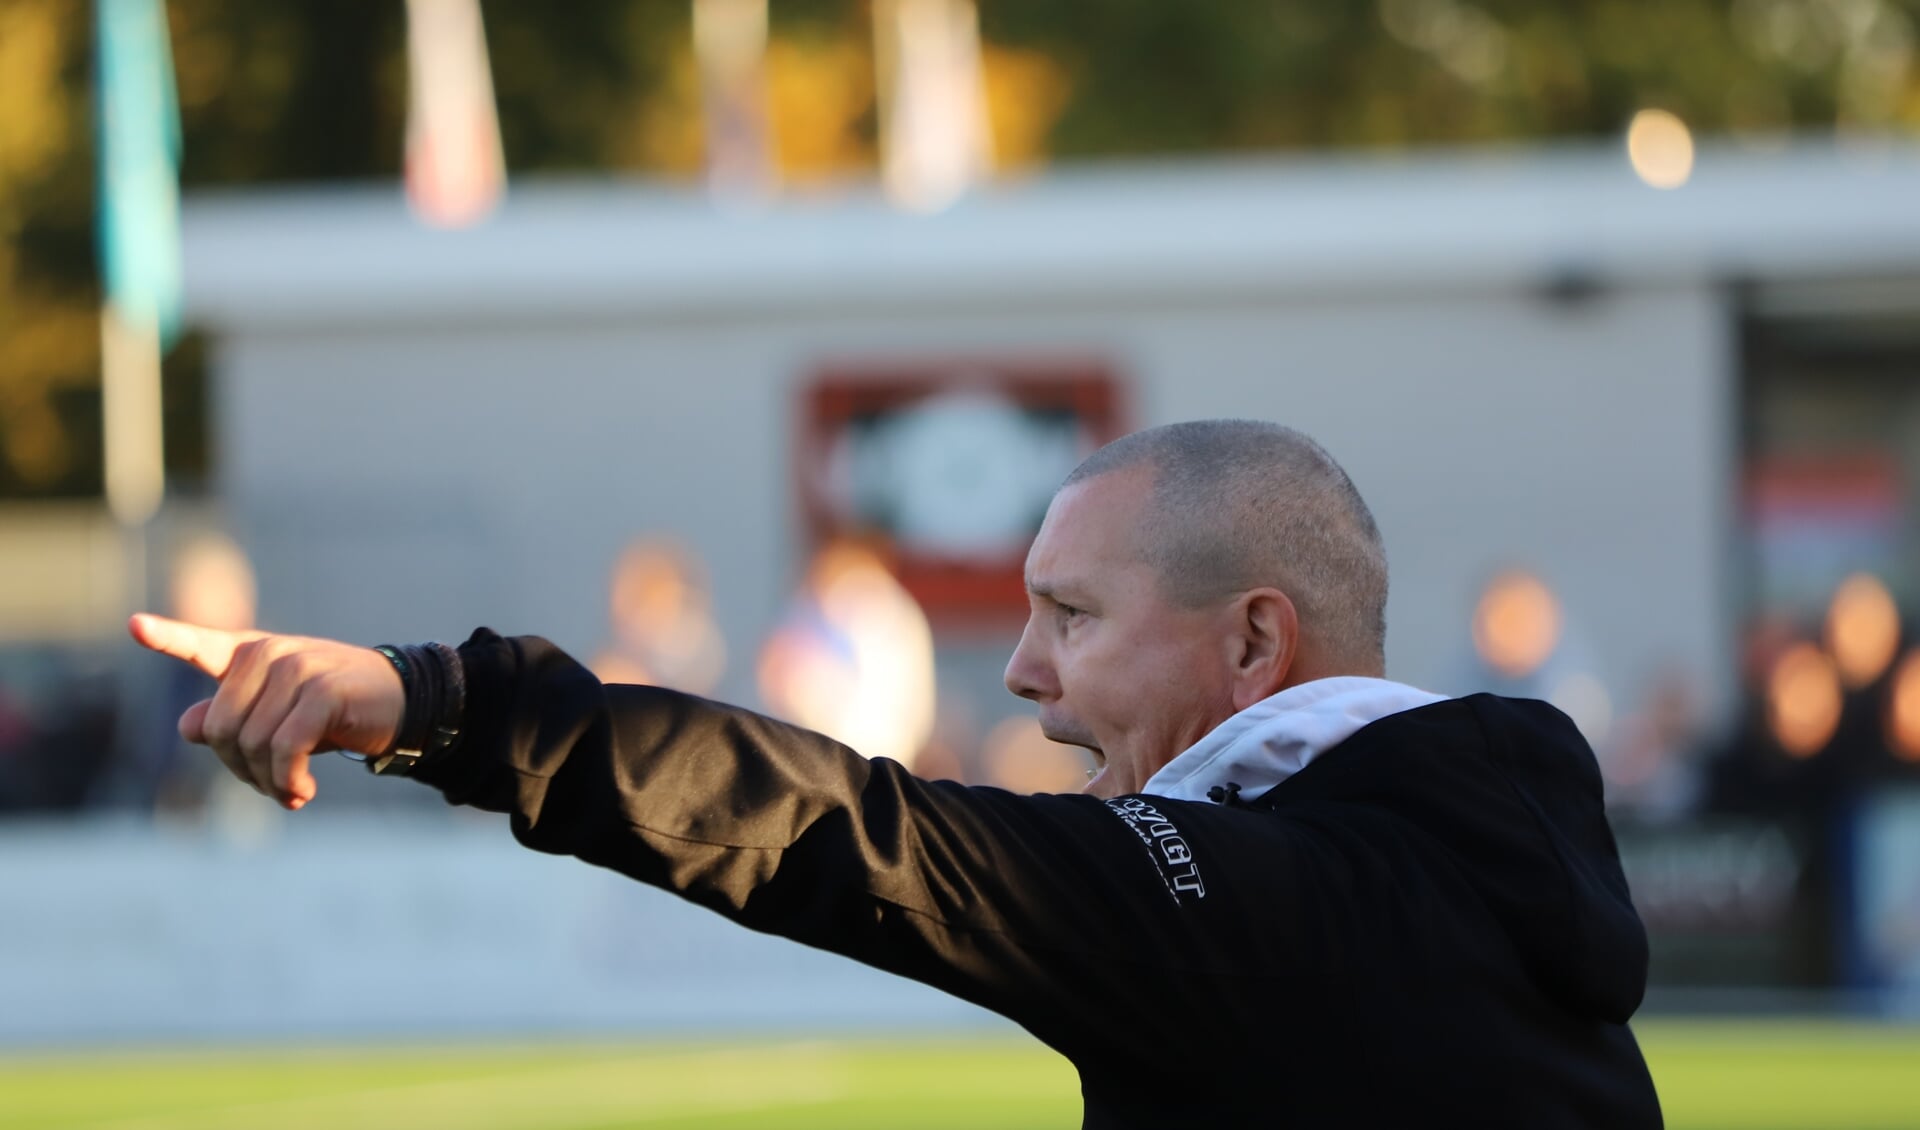 Nieuwerkerk-trainer Ron Luijten: “Stefan is door de beweging in zijn spel zó moeilijk te verdedigen.”